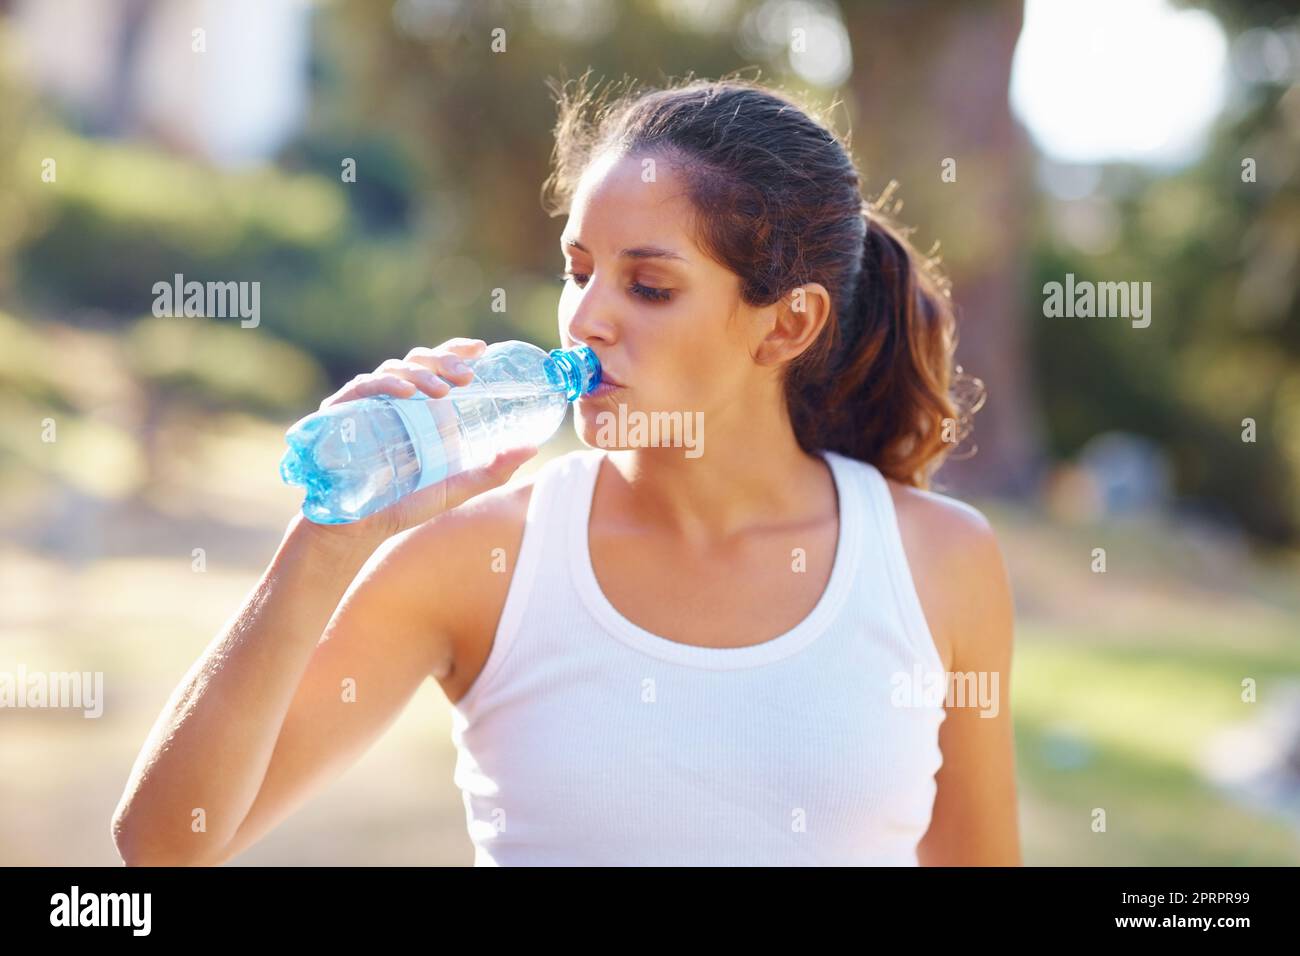 Femme buvant une bouteille d'eau après un jogging. Portrait d'une femme attrayante ayant une bouteille d'eau après un jogging. Banque D'Images